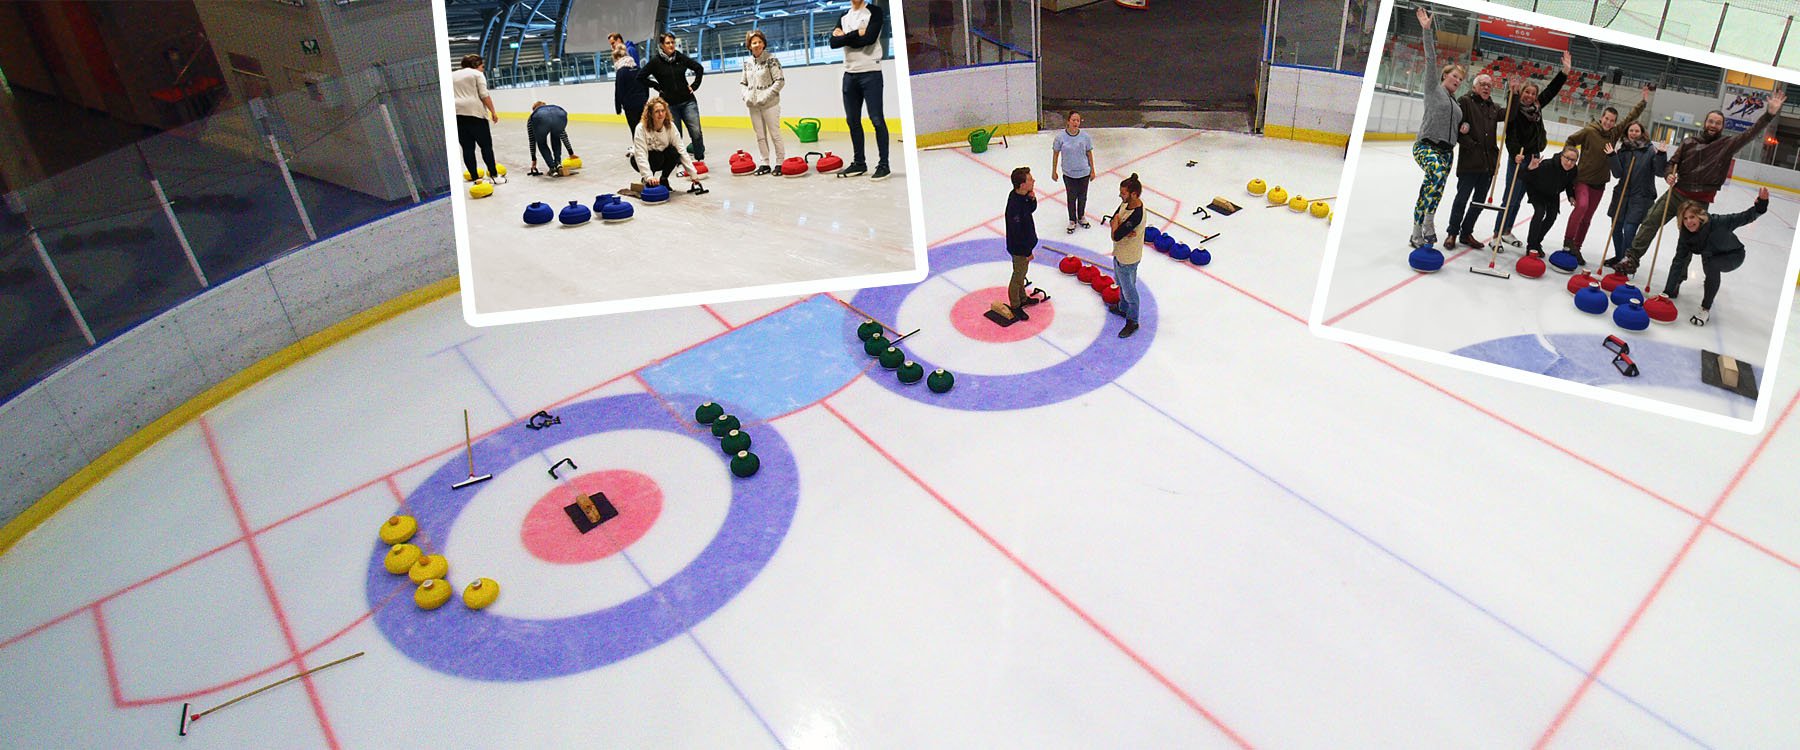 Curling Rotterdam Dordrecht slider 2.jpg